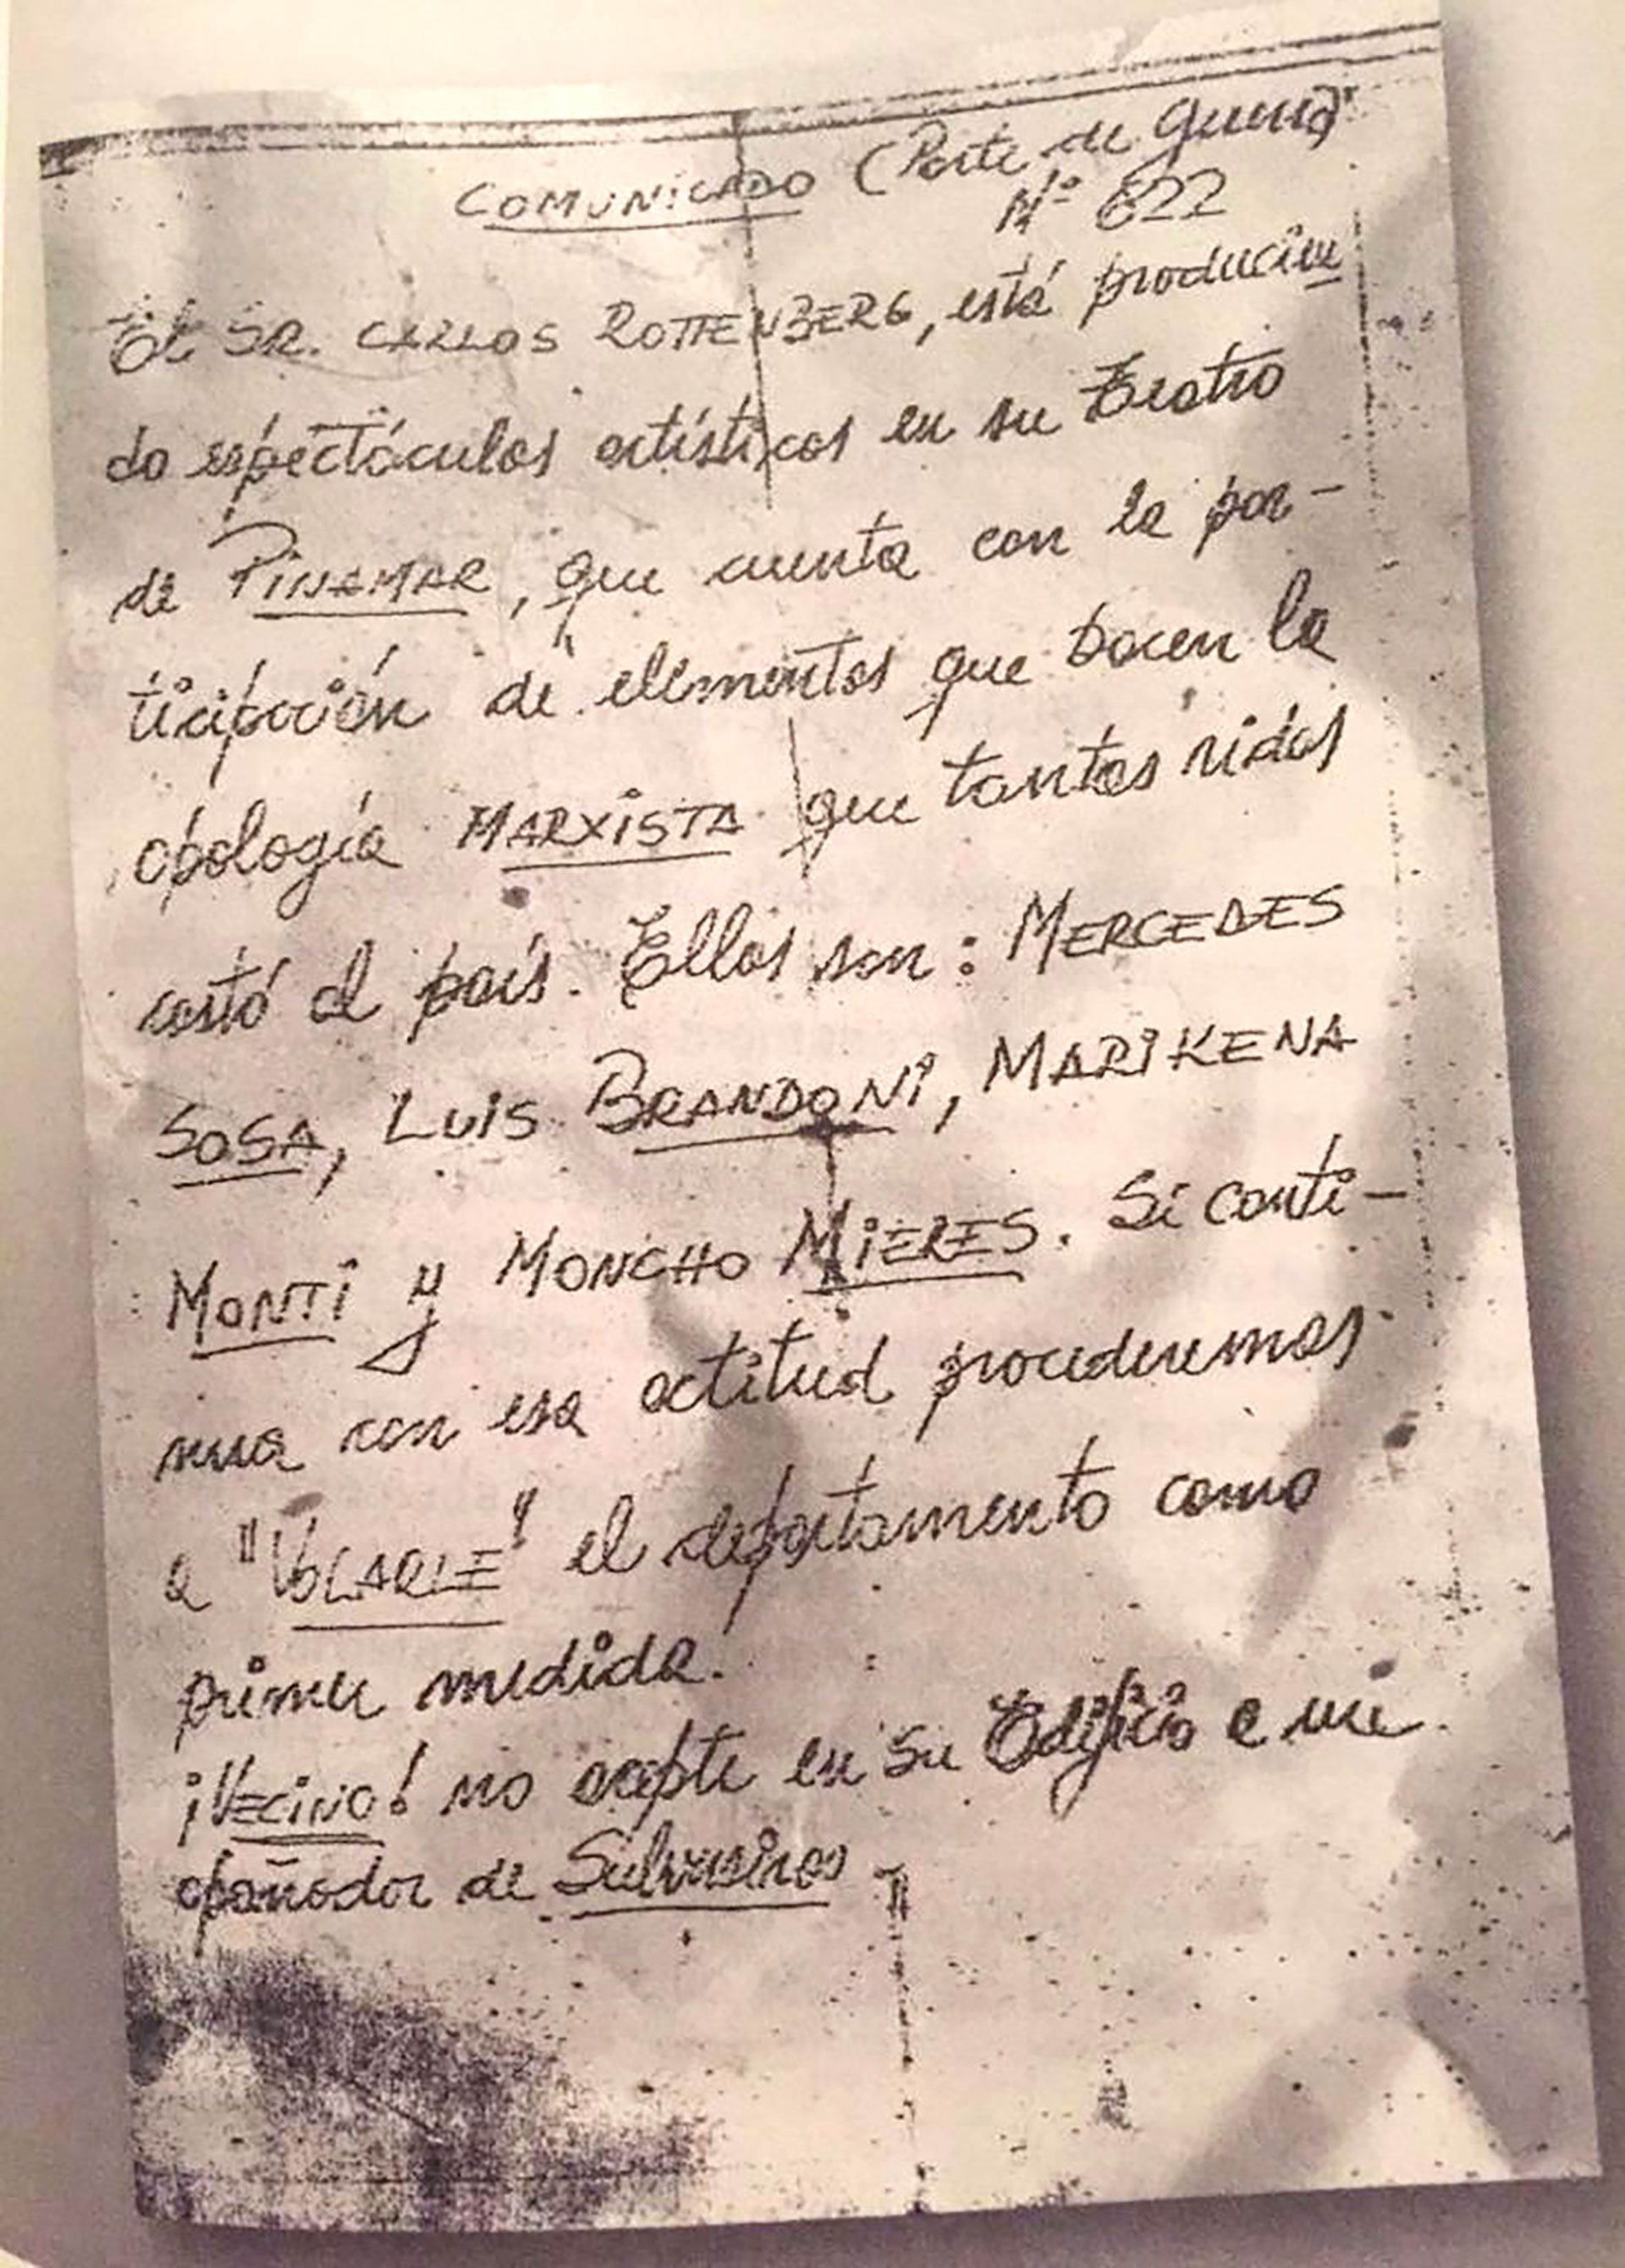 La carta de los comandos de la dictadura que dejaron en todos los departamentos del edficio del barrio de Caballito en el que vivía junto a su familia